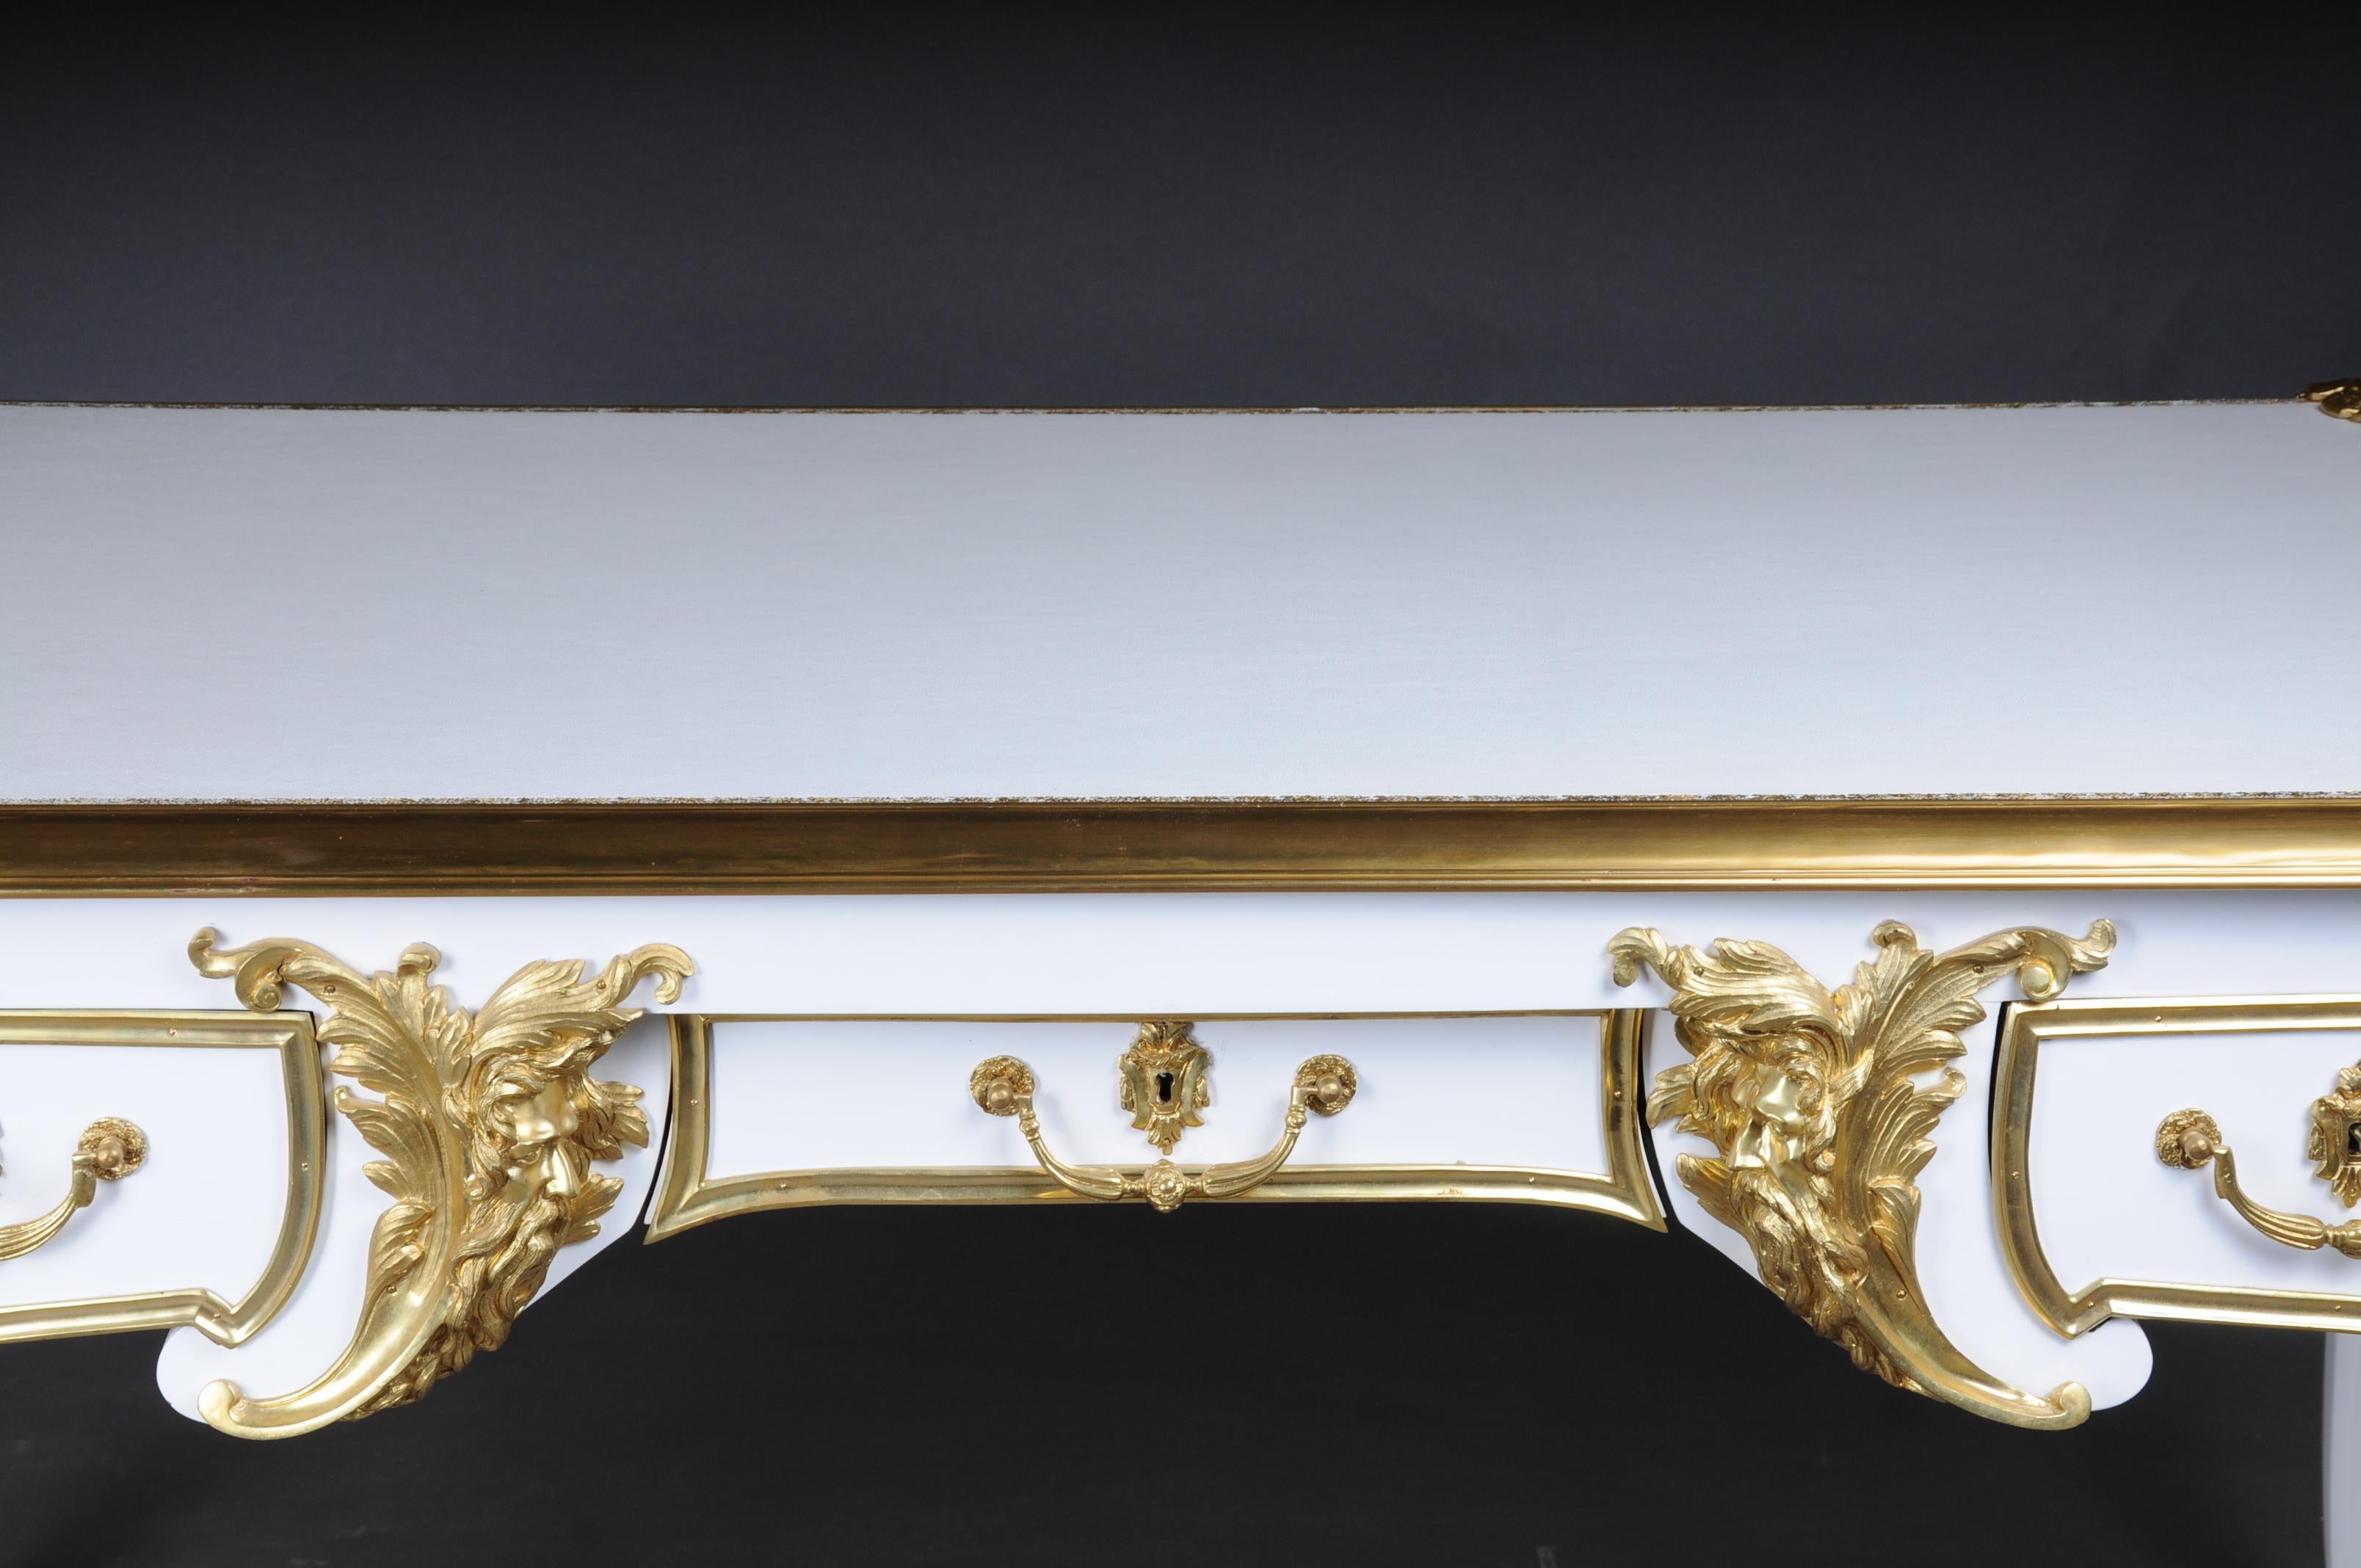 20ème siècle Bureau Plat/Desk blanc brillant avec or d'après C.C. Boulle

Ce modèle a été construit par Charles Boulle, le plus important historien de Louis XV.
Placage blanc piano poli sur hêtre et chêne massifs. Bronze très finement ciselé.